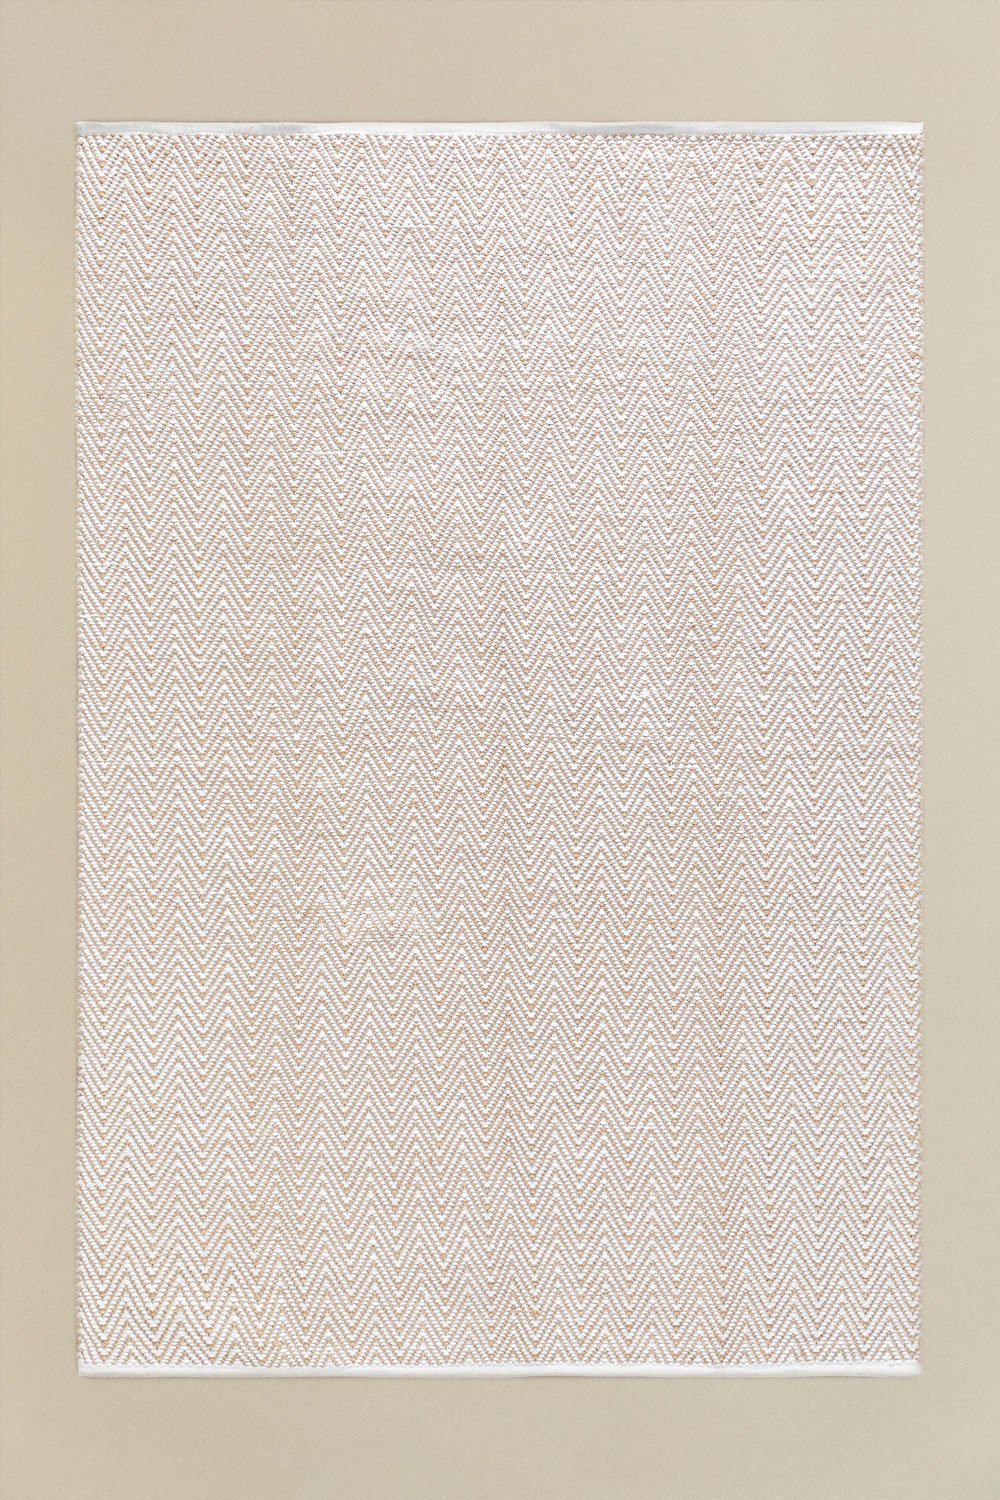 Jute vloerkleed voor buiten (240x160 cm) Romain, galerij beeld 1